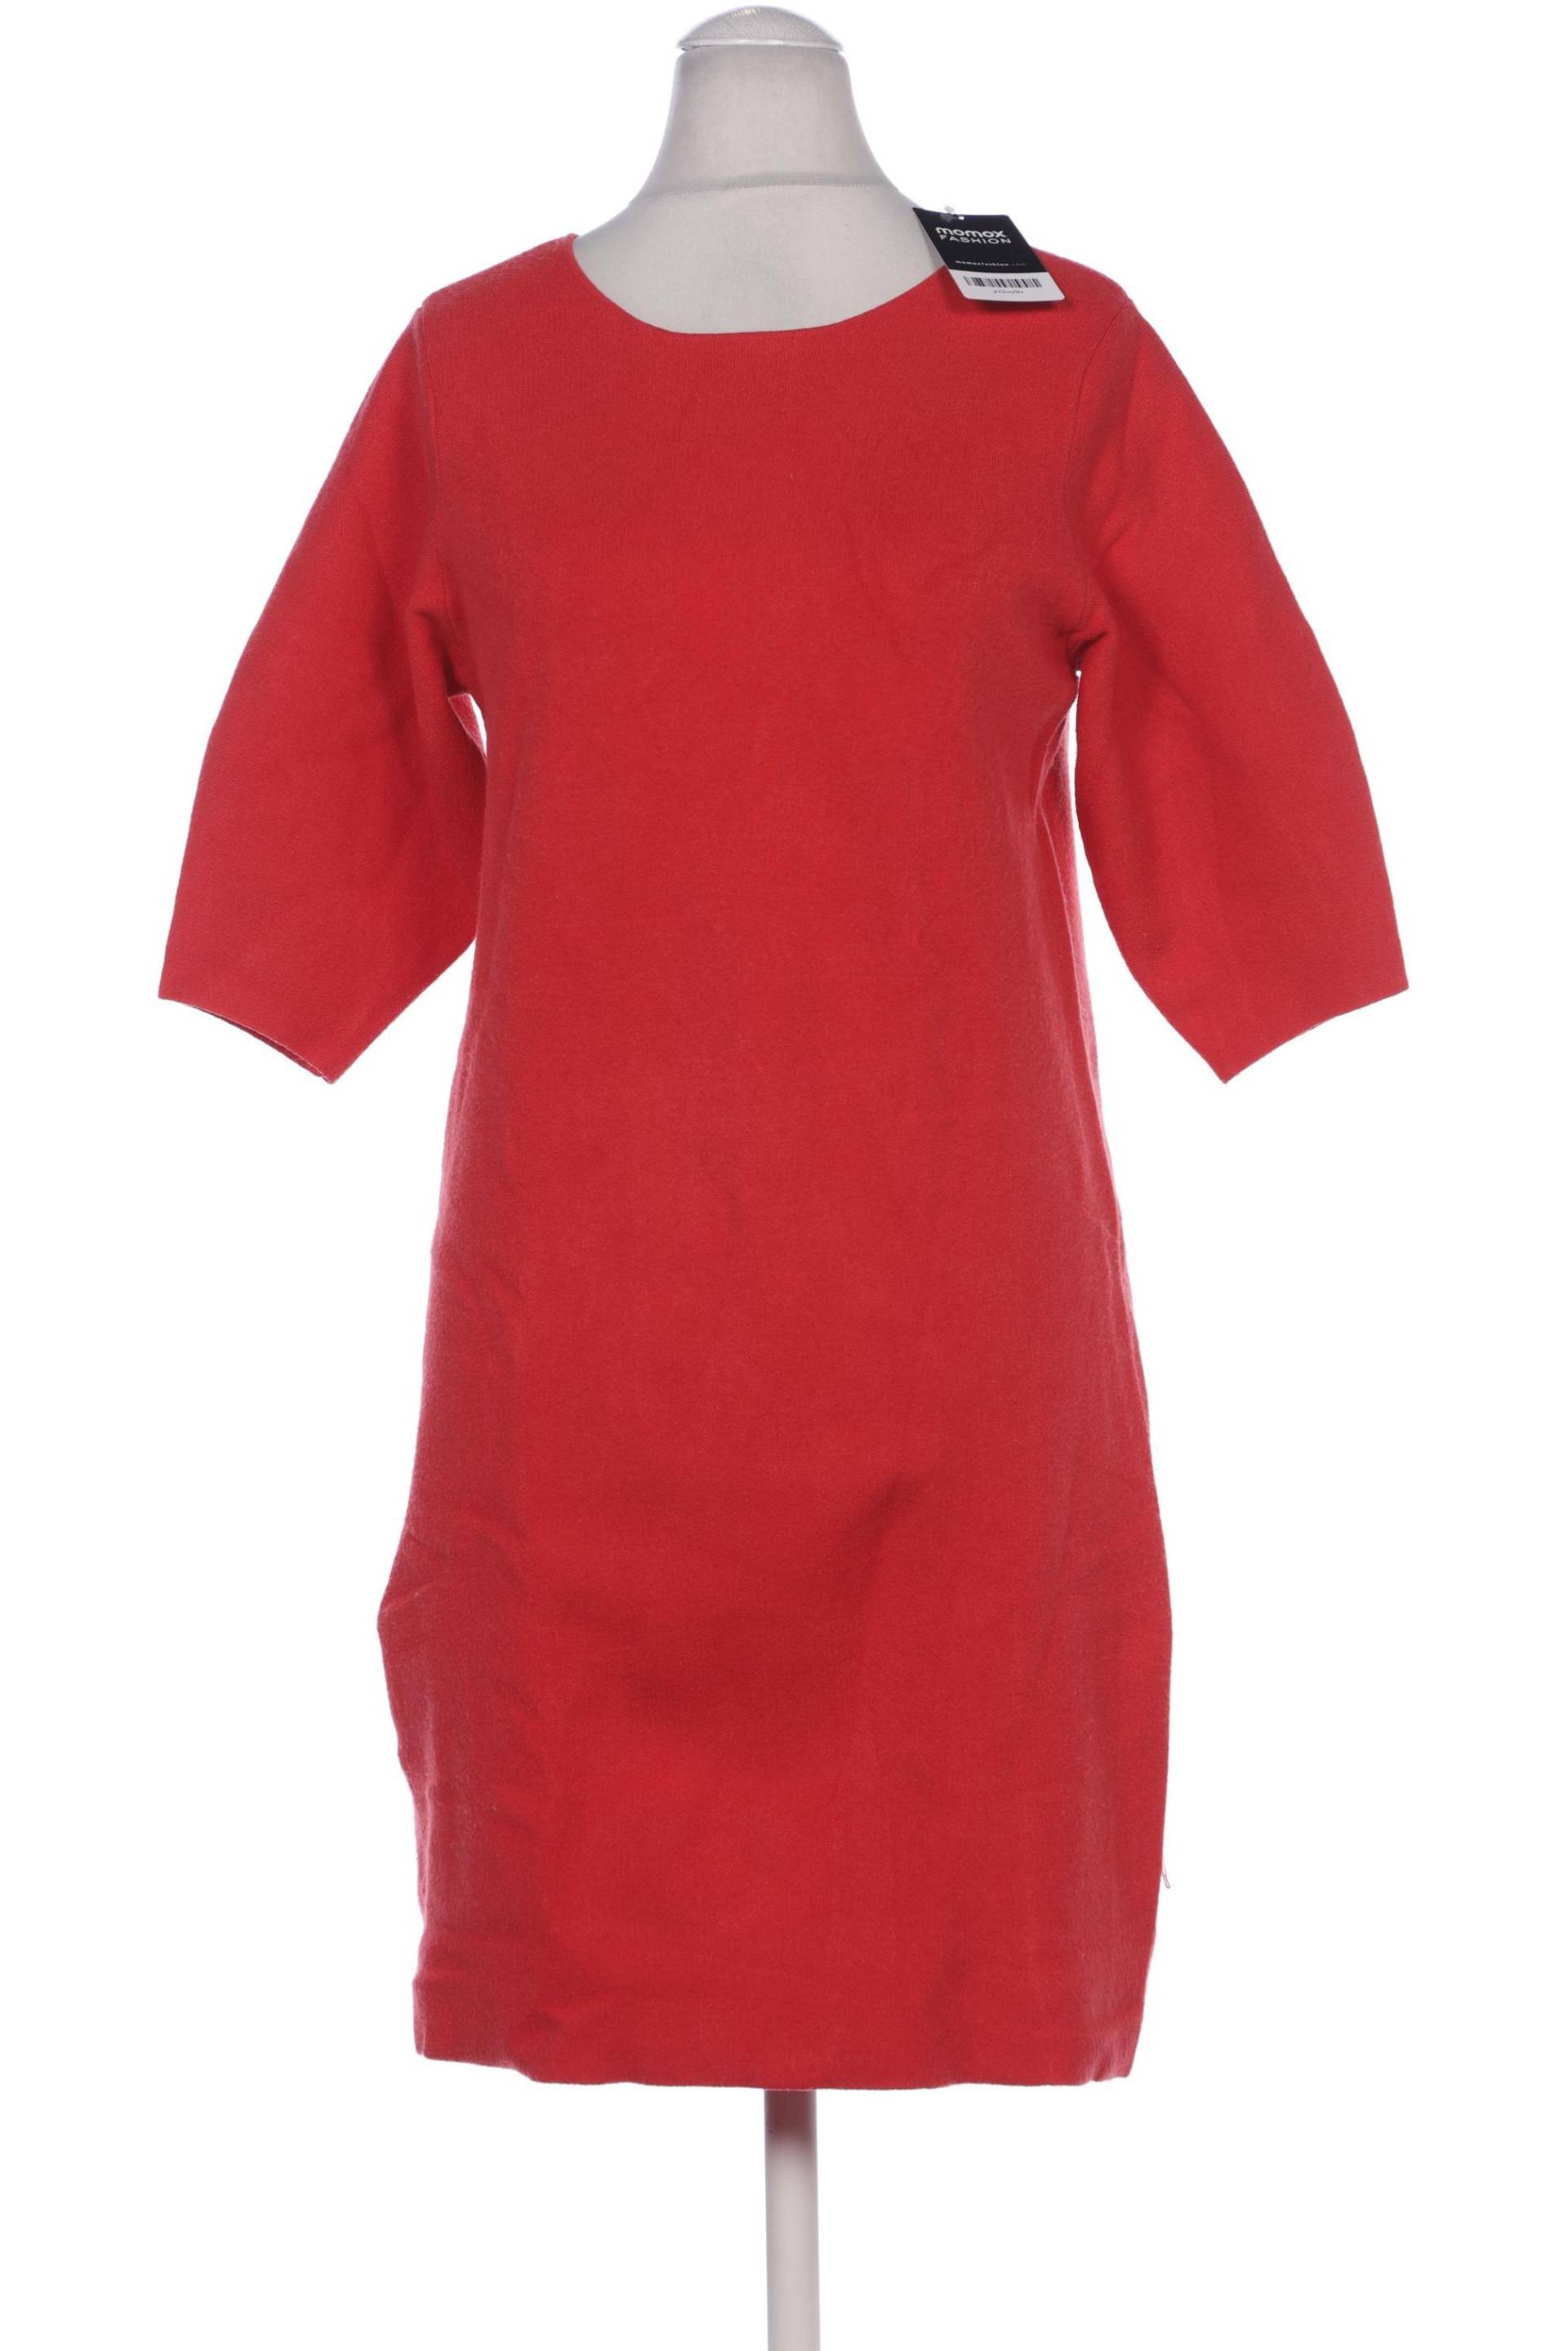 Stefanel Damen Kleid, rot von Stefanel